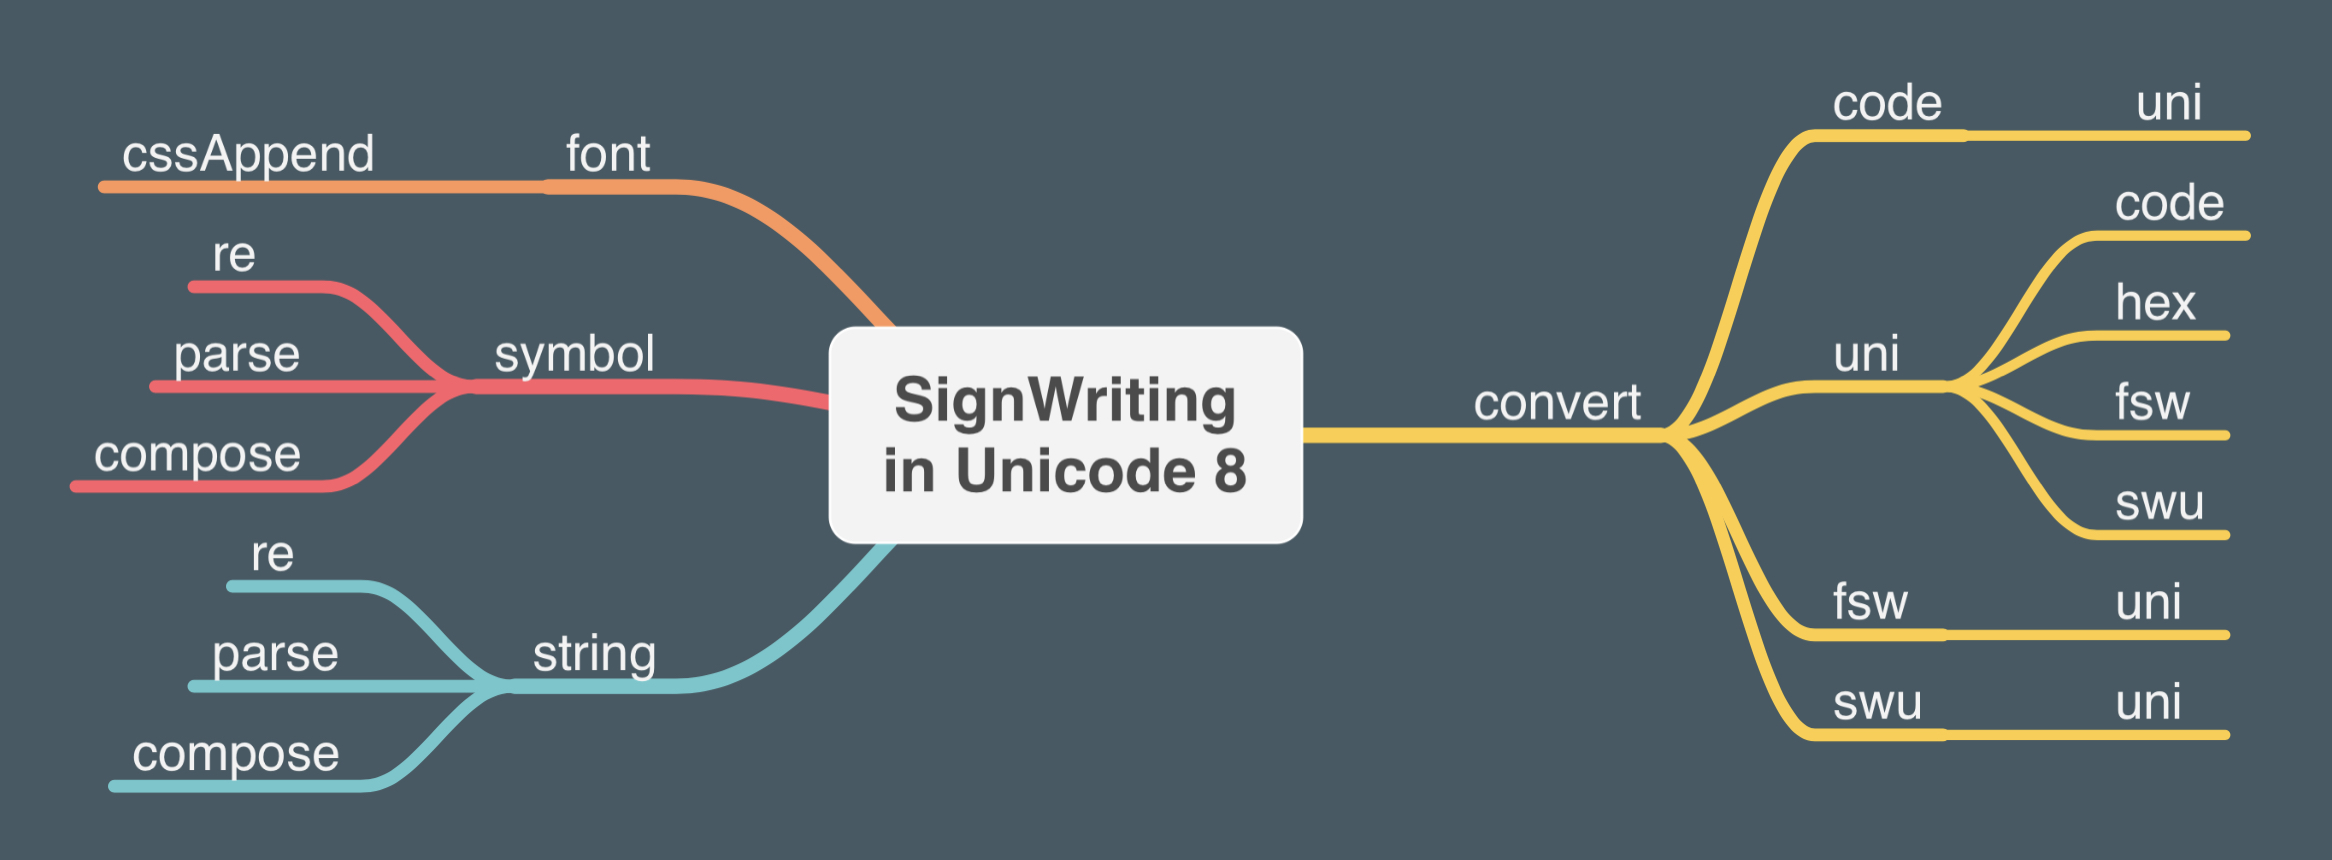 SignWriting in Unicode 8 (uni8) Mindmap